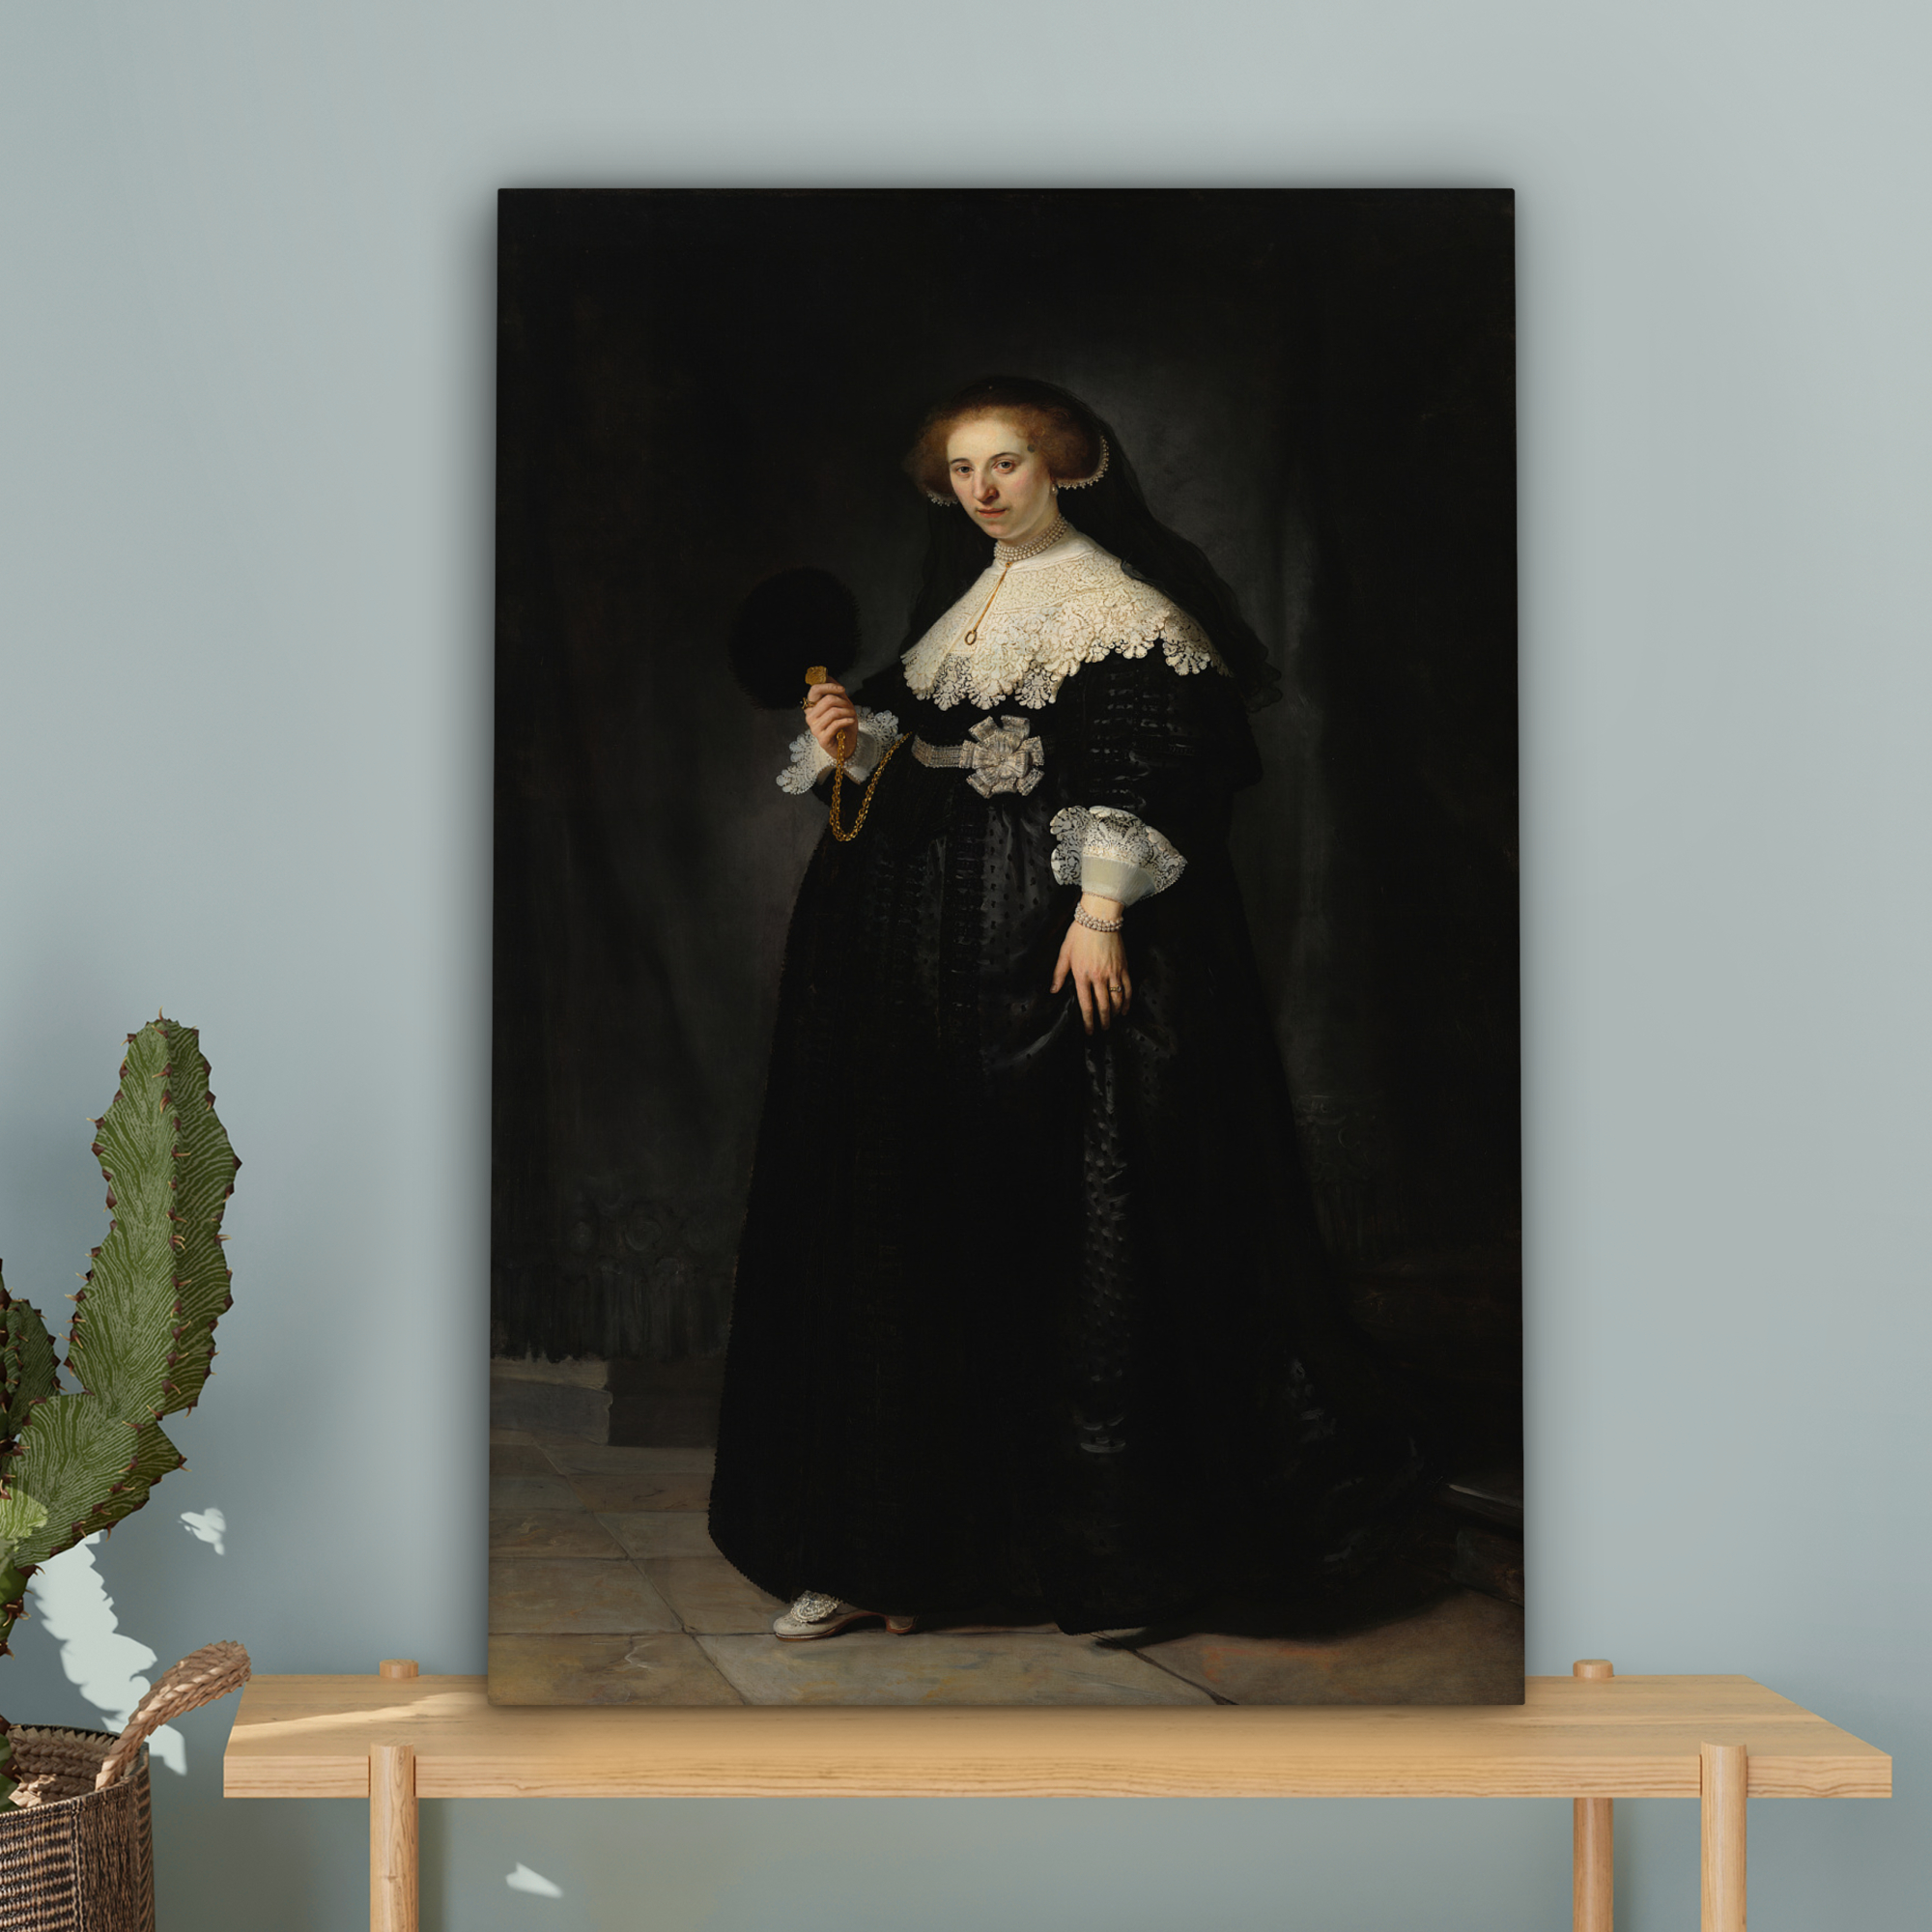 Leinwandbild - Das Hochzeitsbildnis von Oopjen Coppit - Rembrandt van Rijn-4